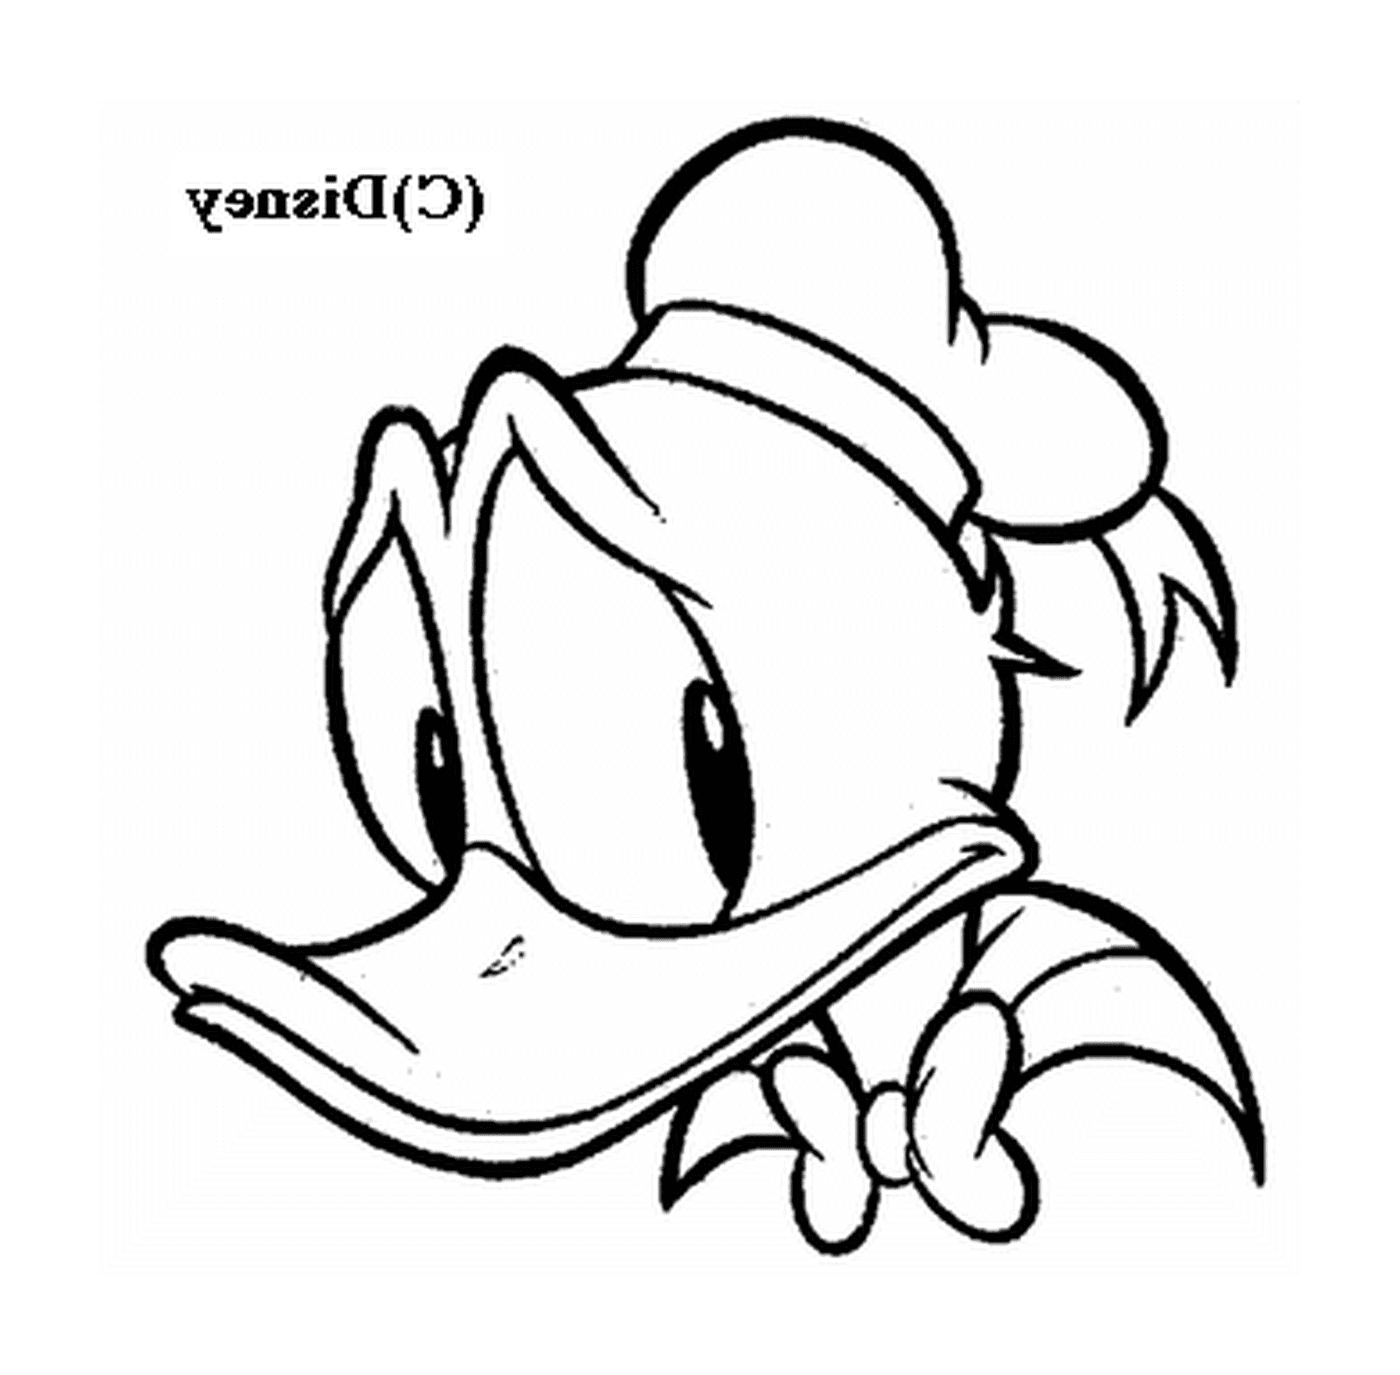  A cabeça expressiva de Donald 